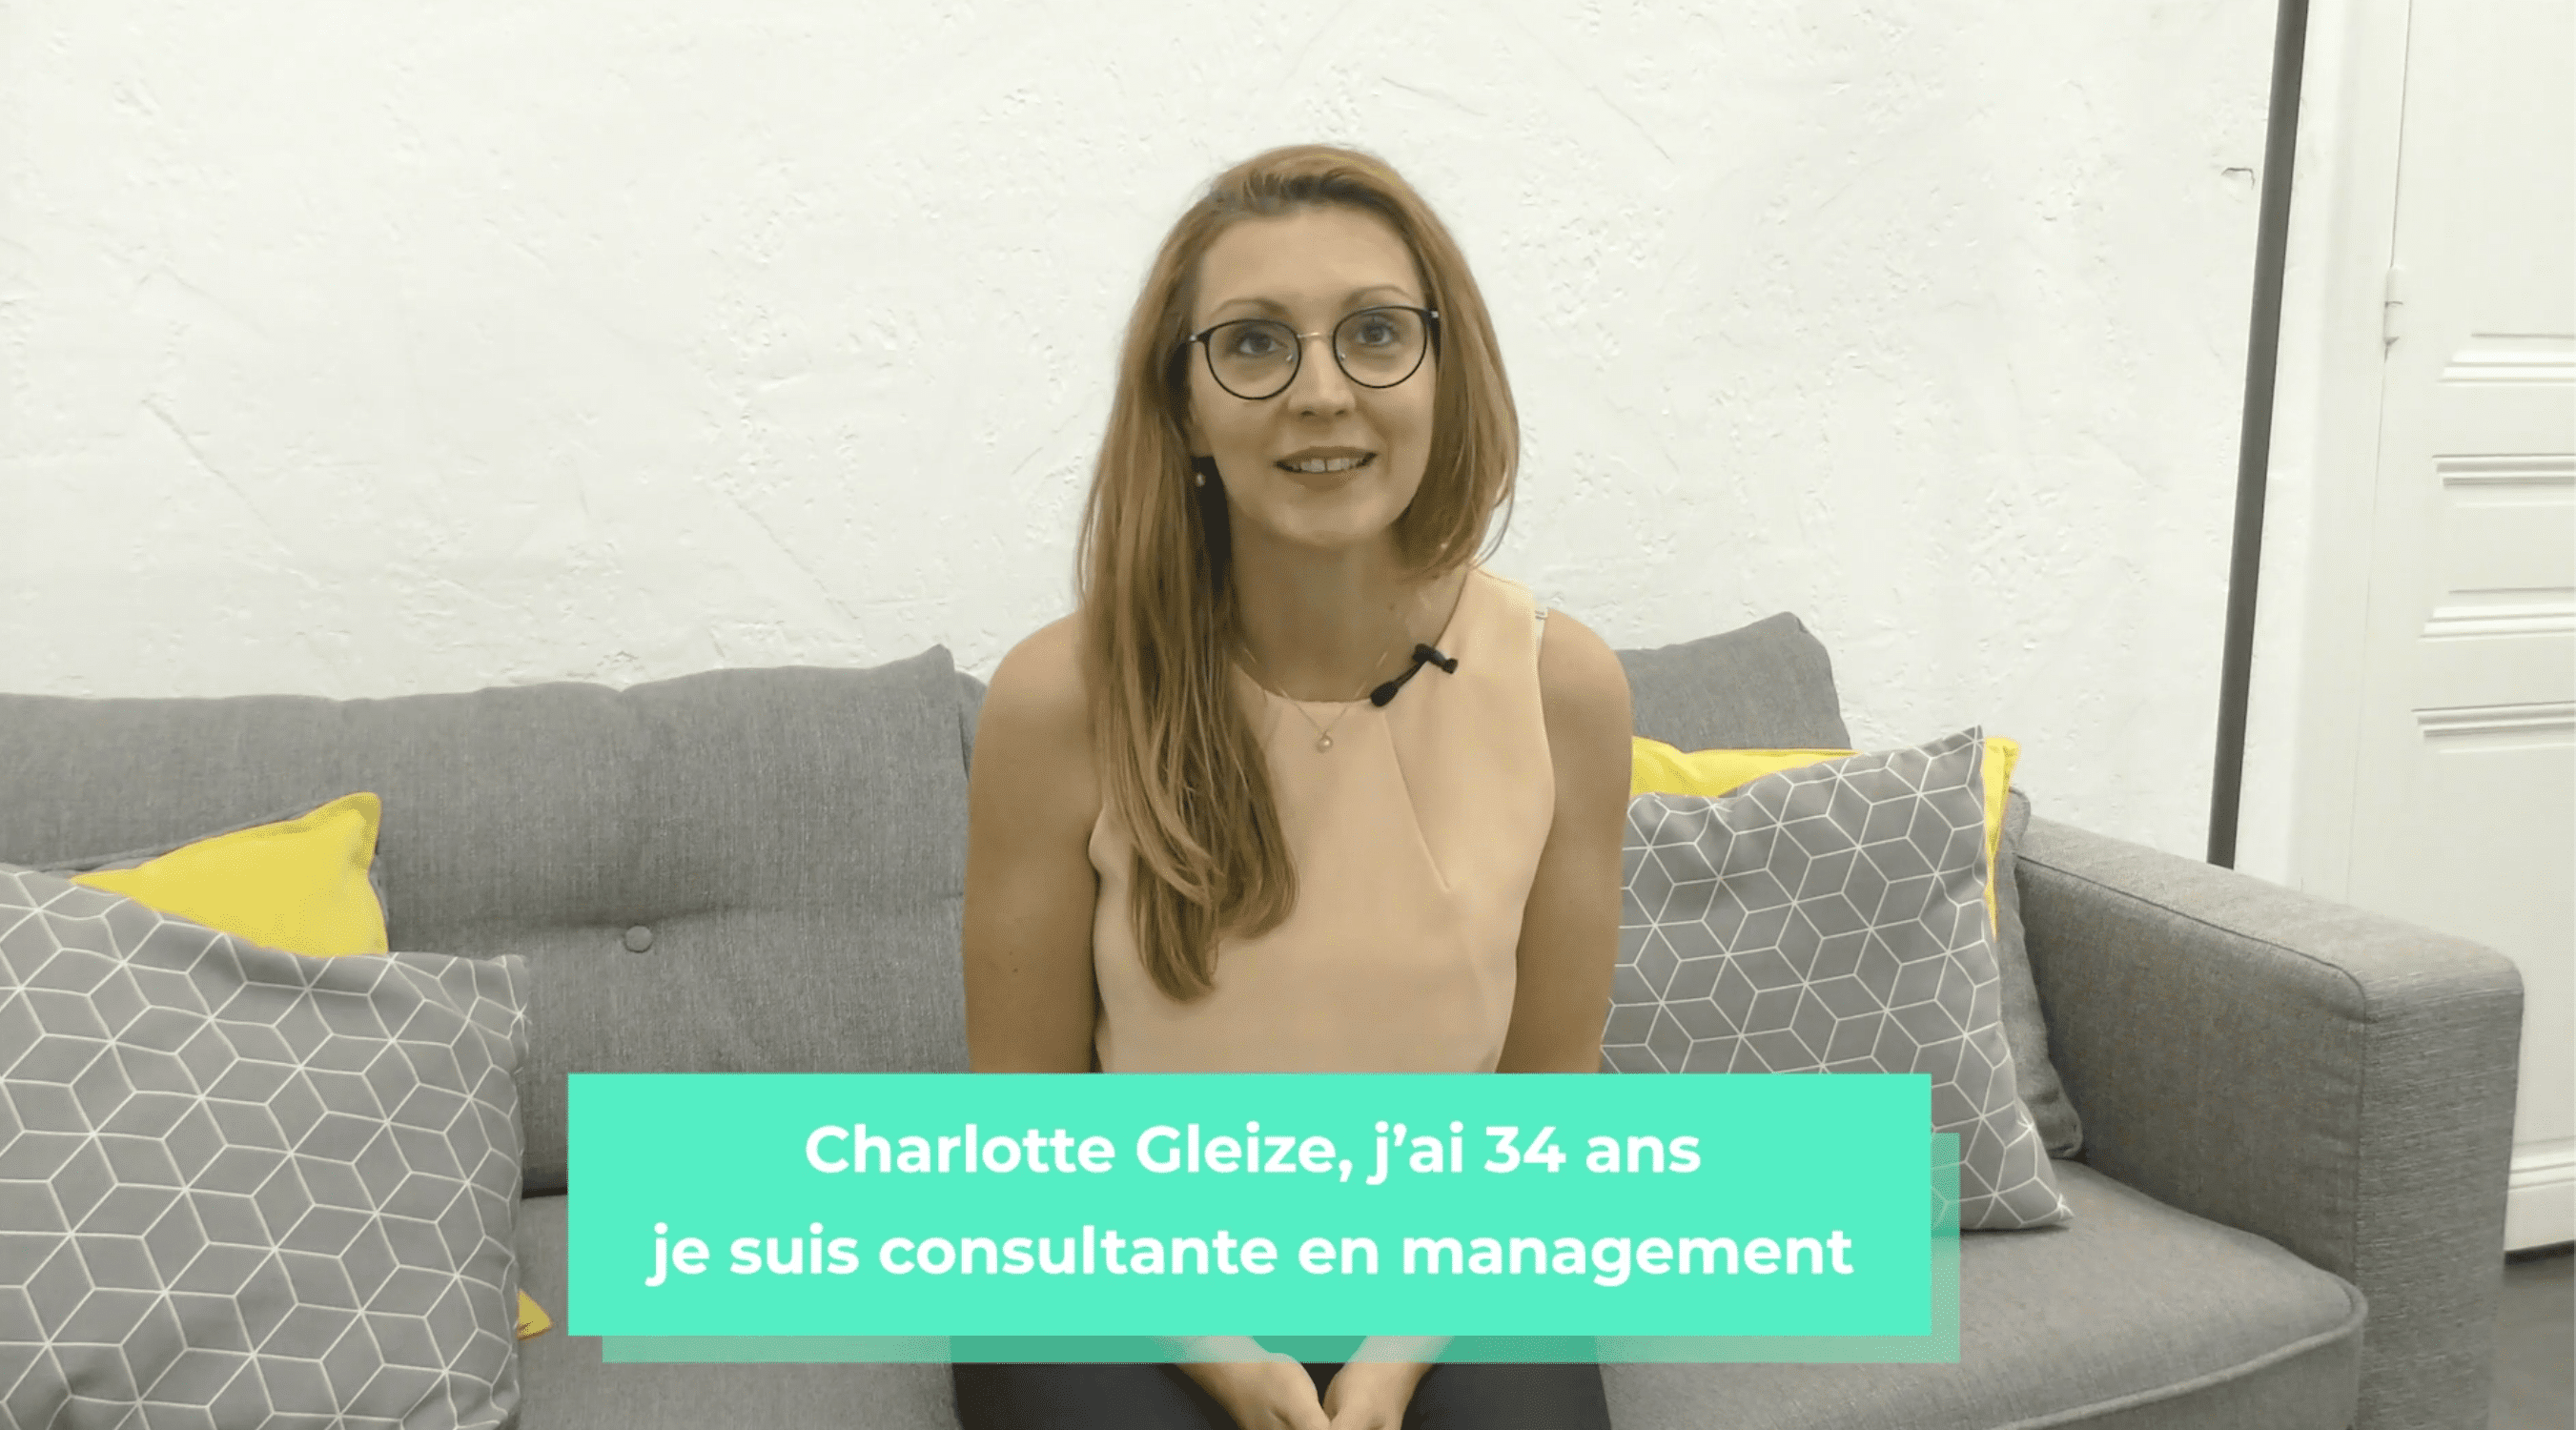 Charlotte Gleize